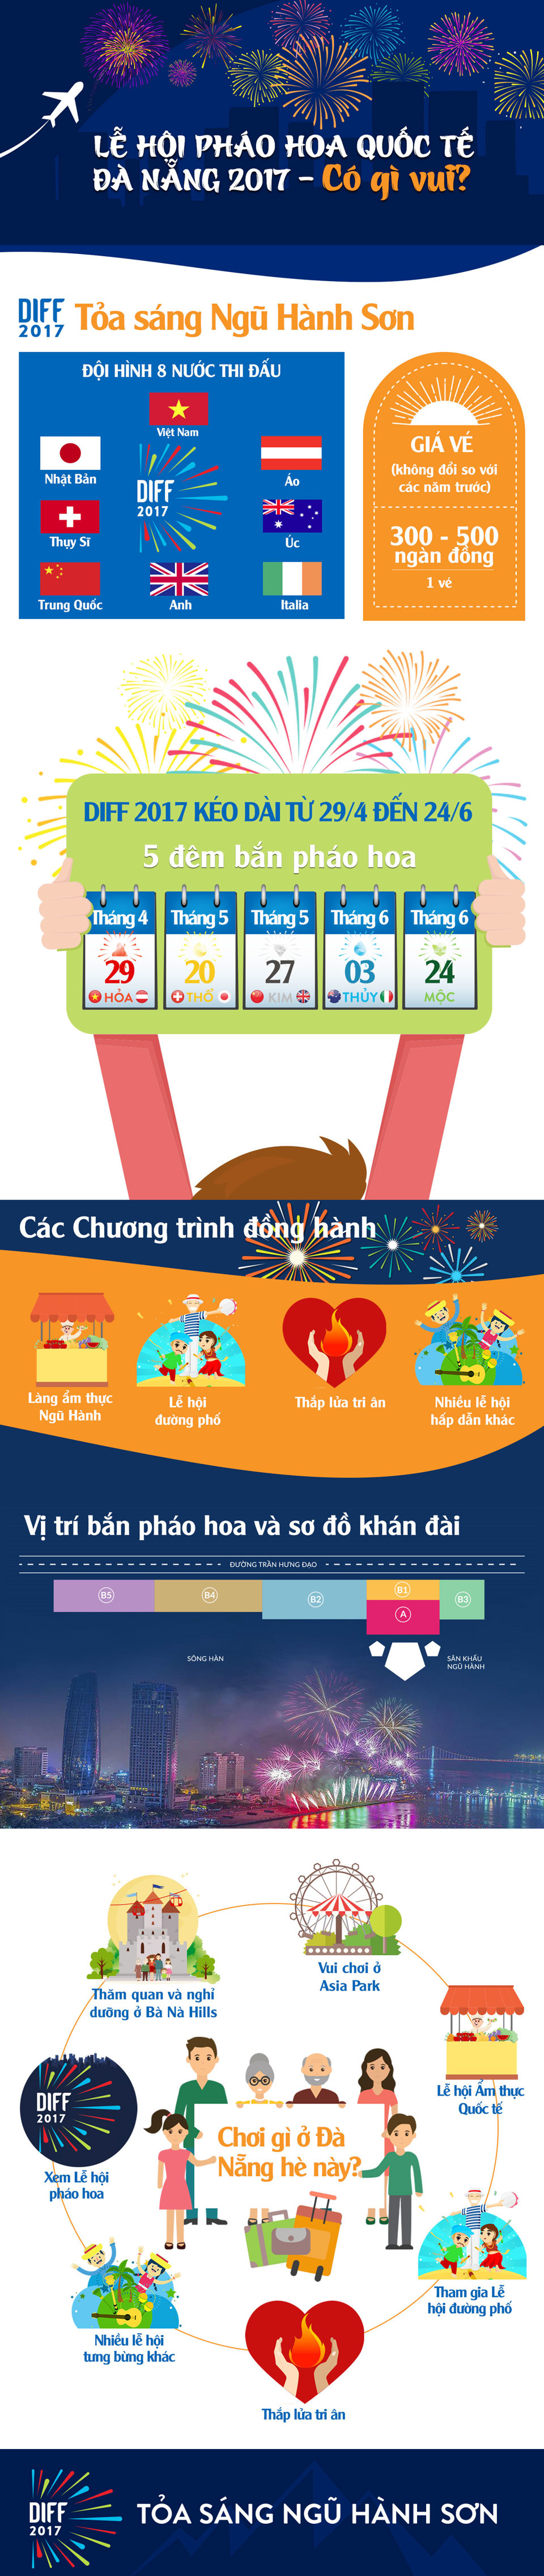 DIFF 2017 - lễ hội pháo hoa quốc tế mang đến Việt Nam những bất ngờ gì? - Ảnh 1